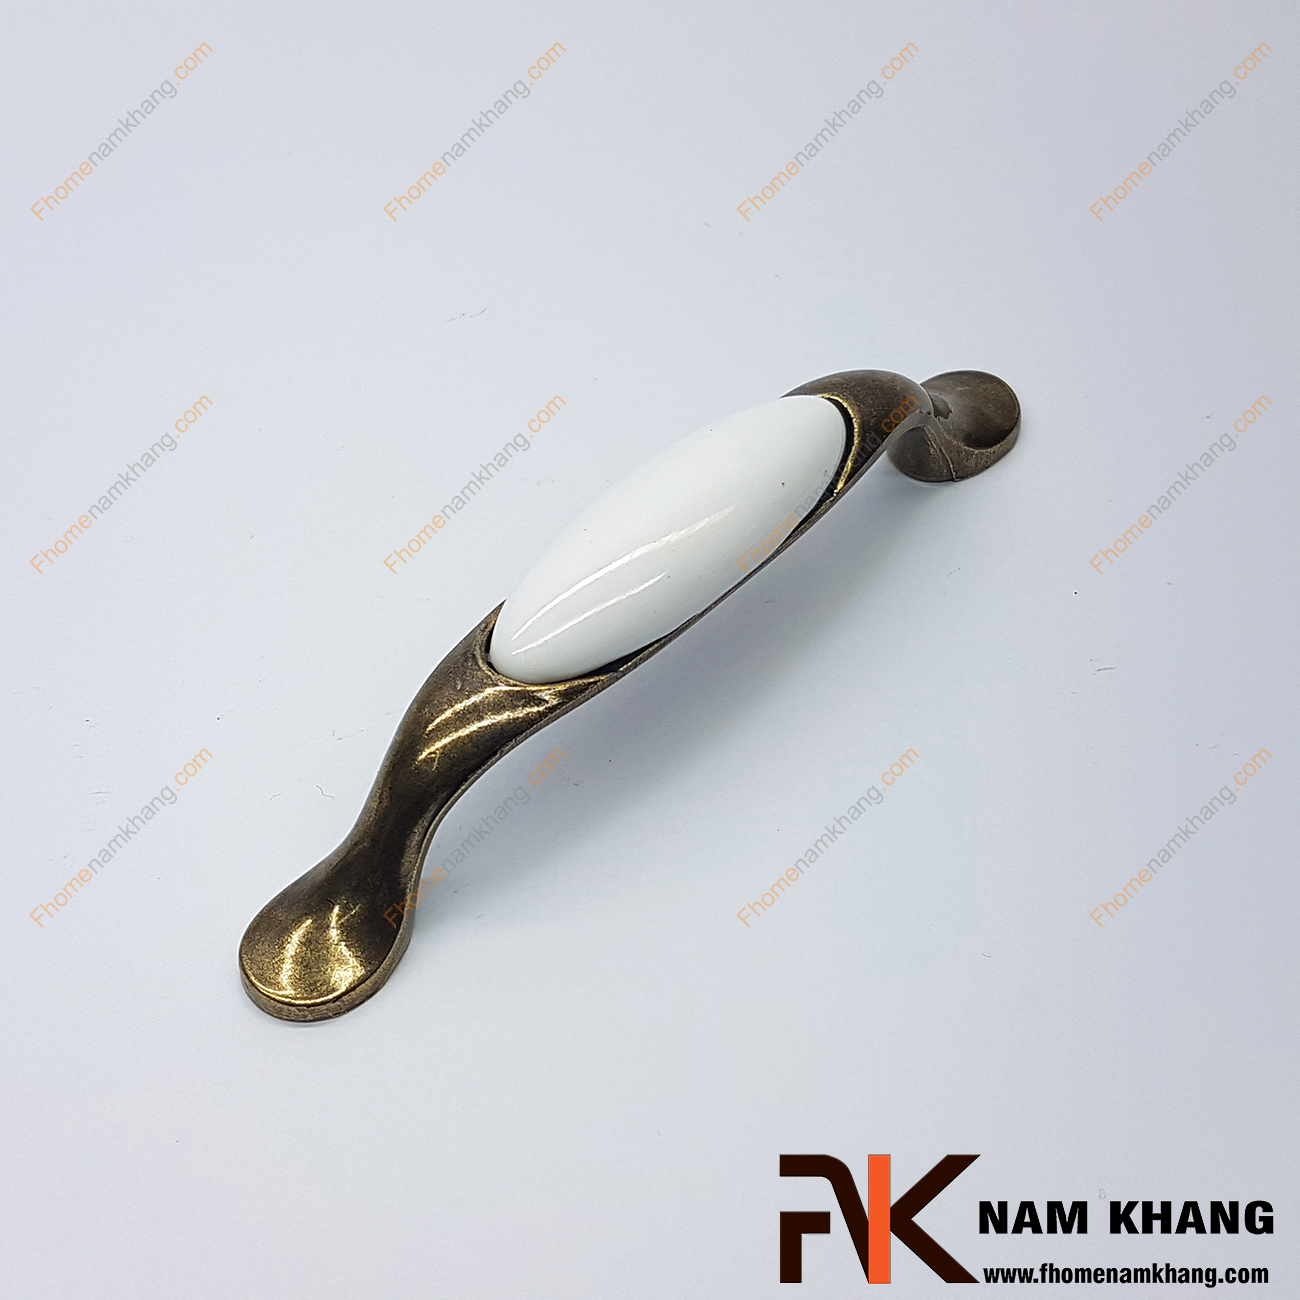 Tay nắm tủ cổ điển phối hợp sứ trắng NK360-96T thuộc dạng tay nắm kết hợp từ 2 chất liệu quen thuộc là hợp kim mạ đồng cổ và sứ cao cấp